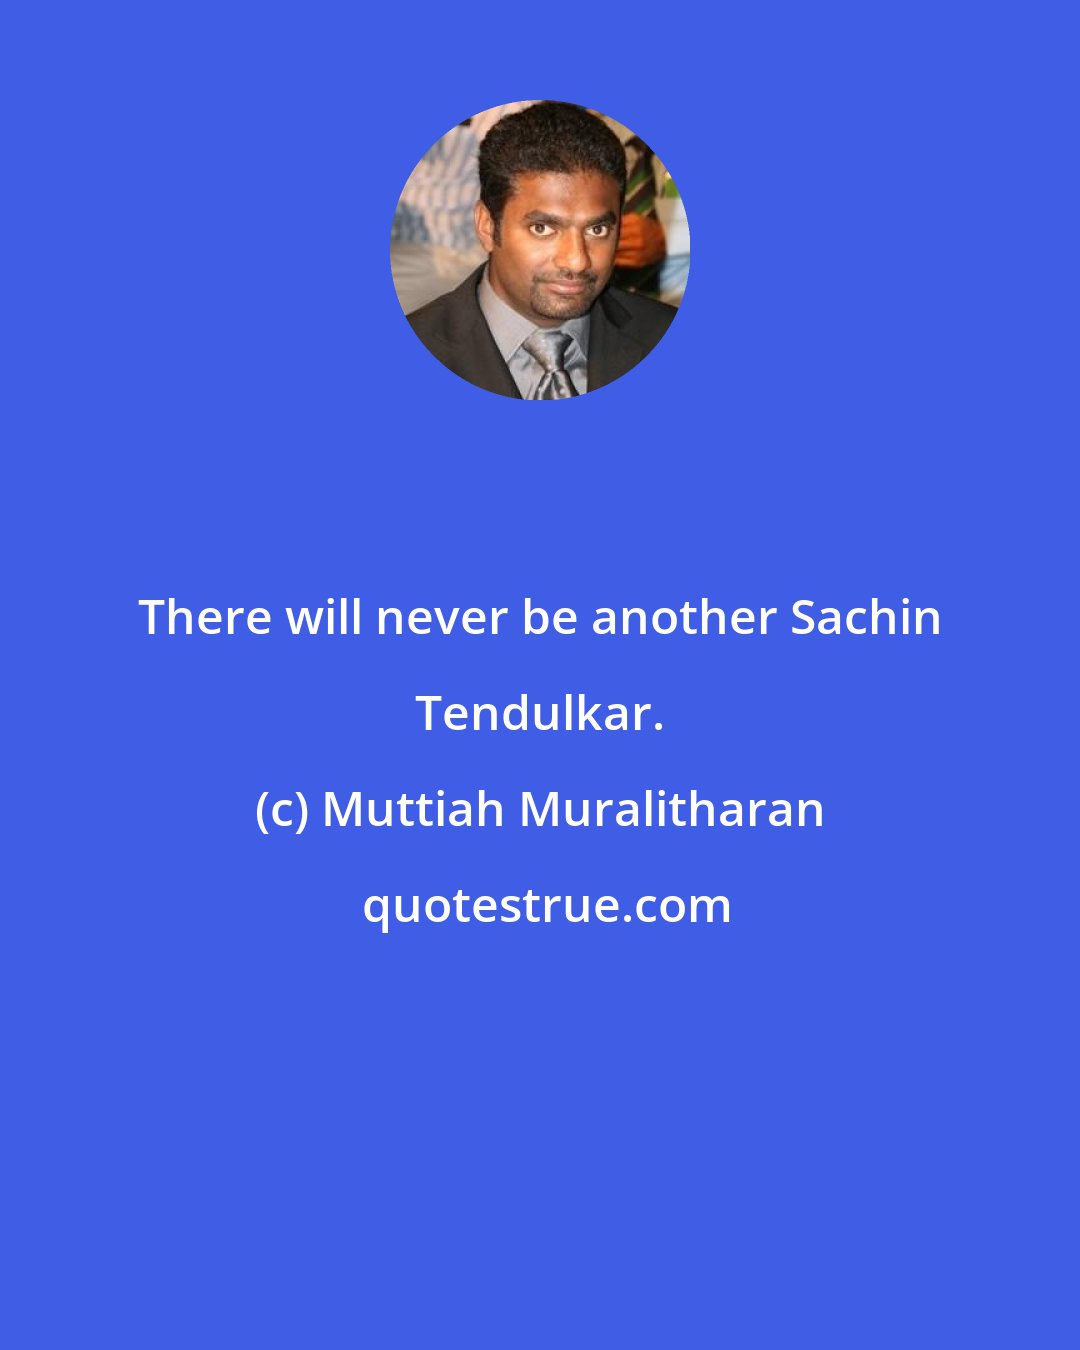 Muttiah Muralitharan: There will never be another Sachin Tendulkar.